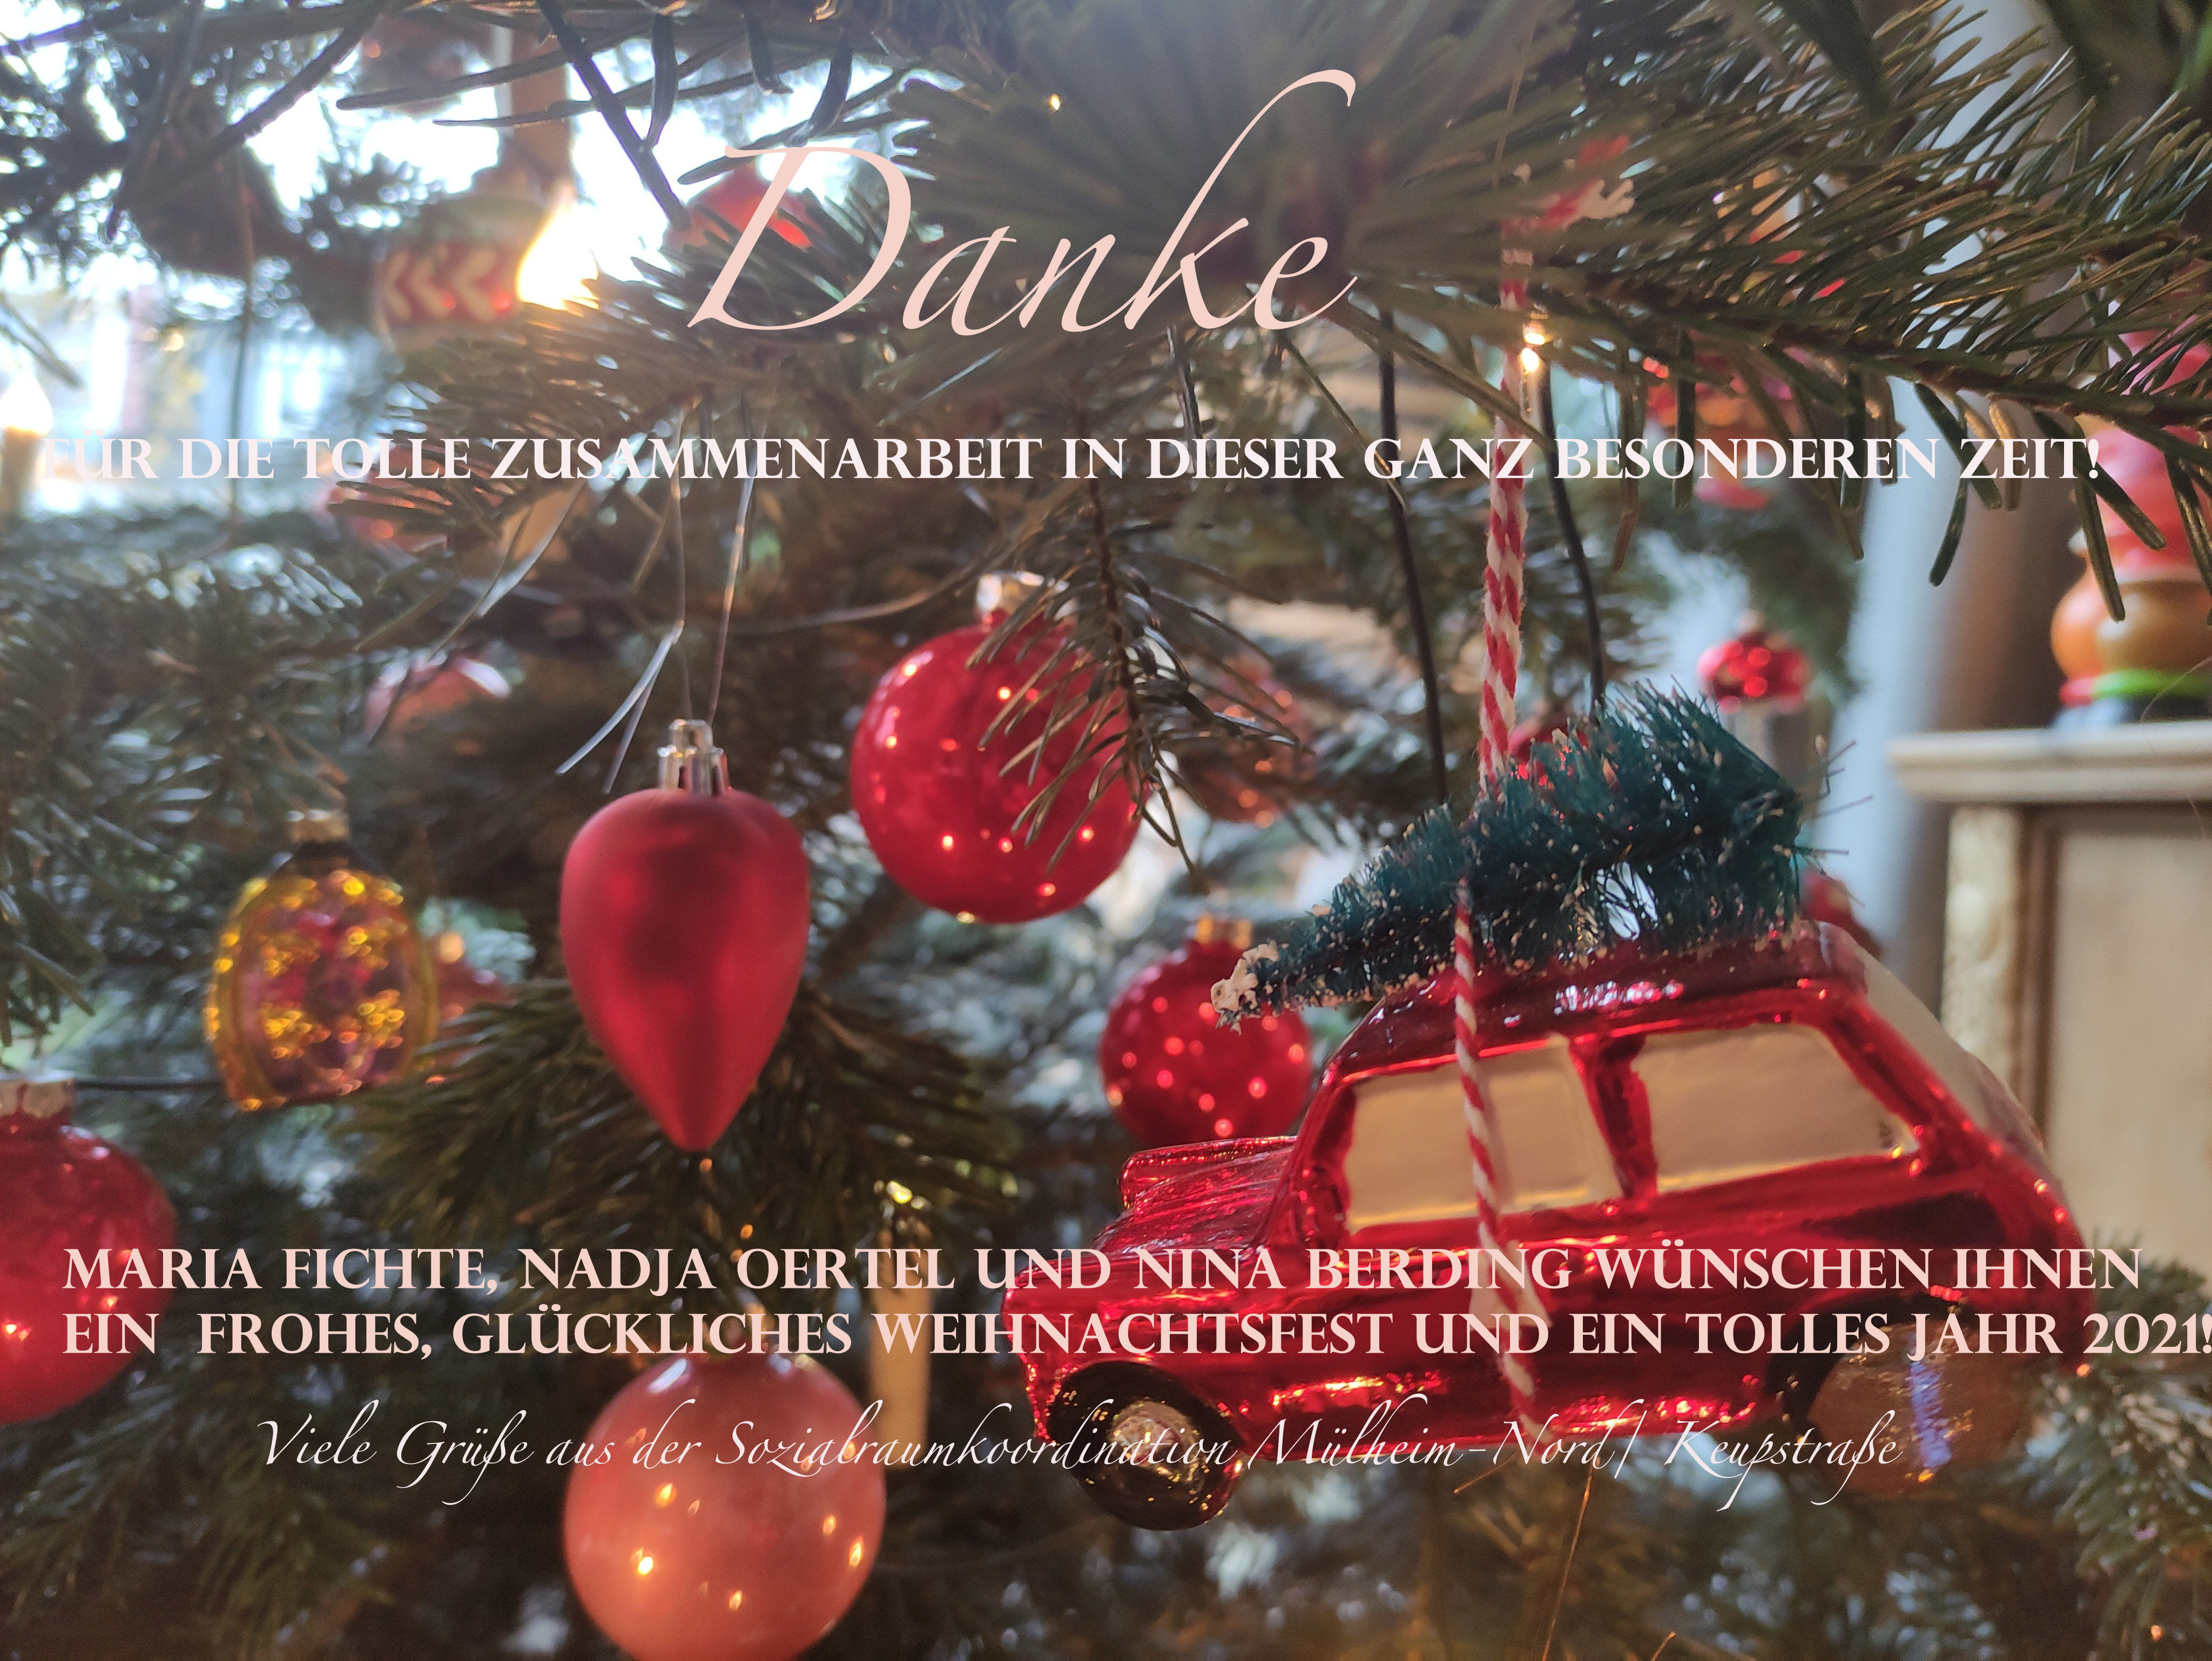 Wir Sagen Danke Und Wunschen Frohe Weihnachten Muelheim Nord Keupstrasse